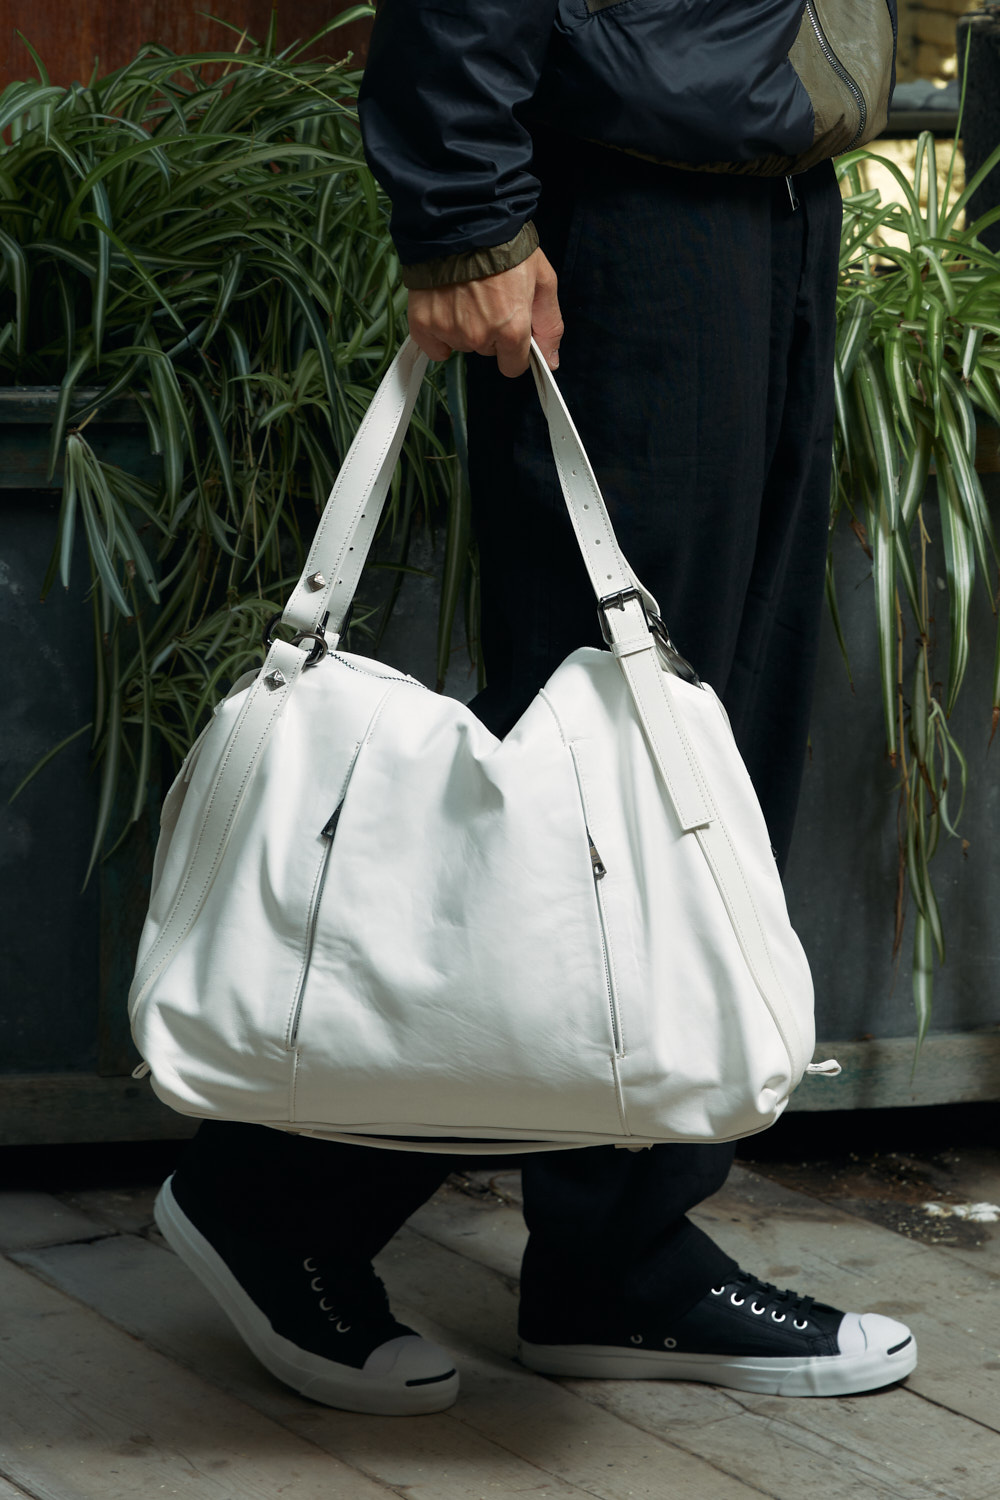 Giorgio Brato | Leather Bag